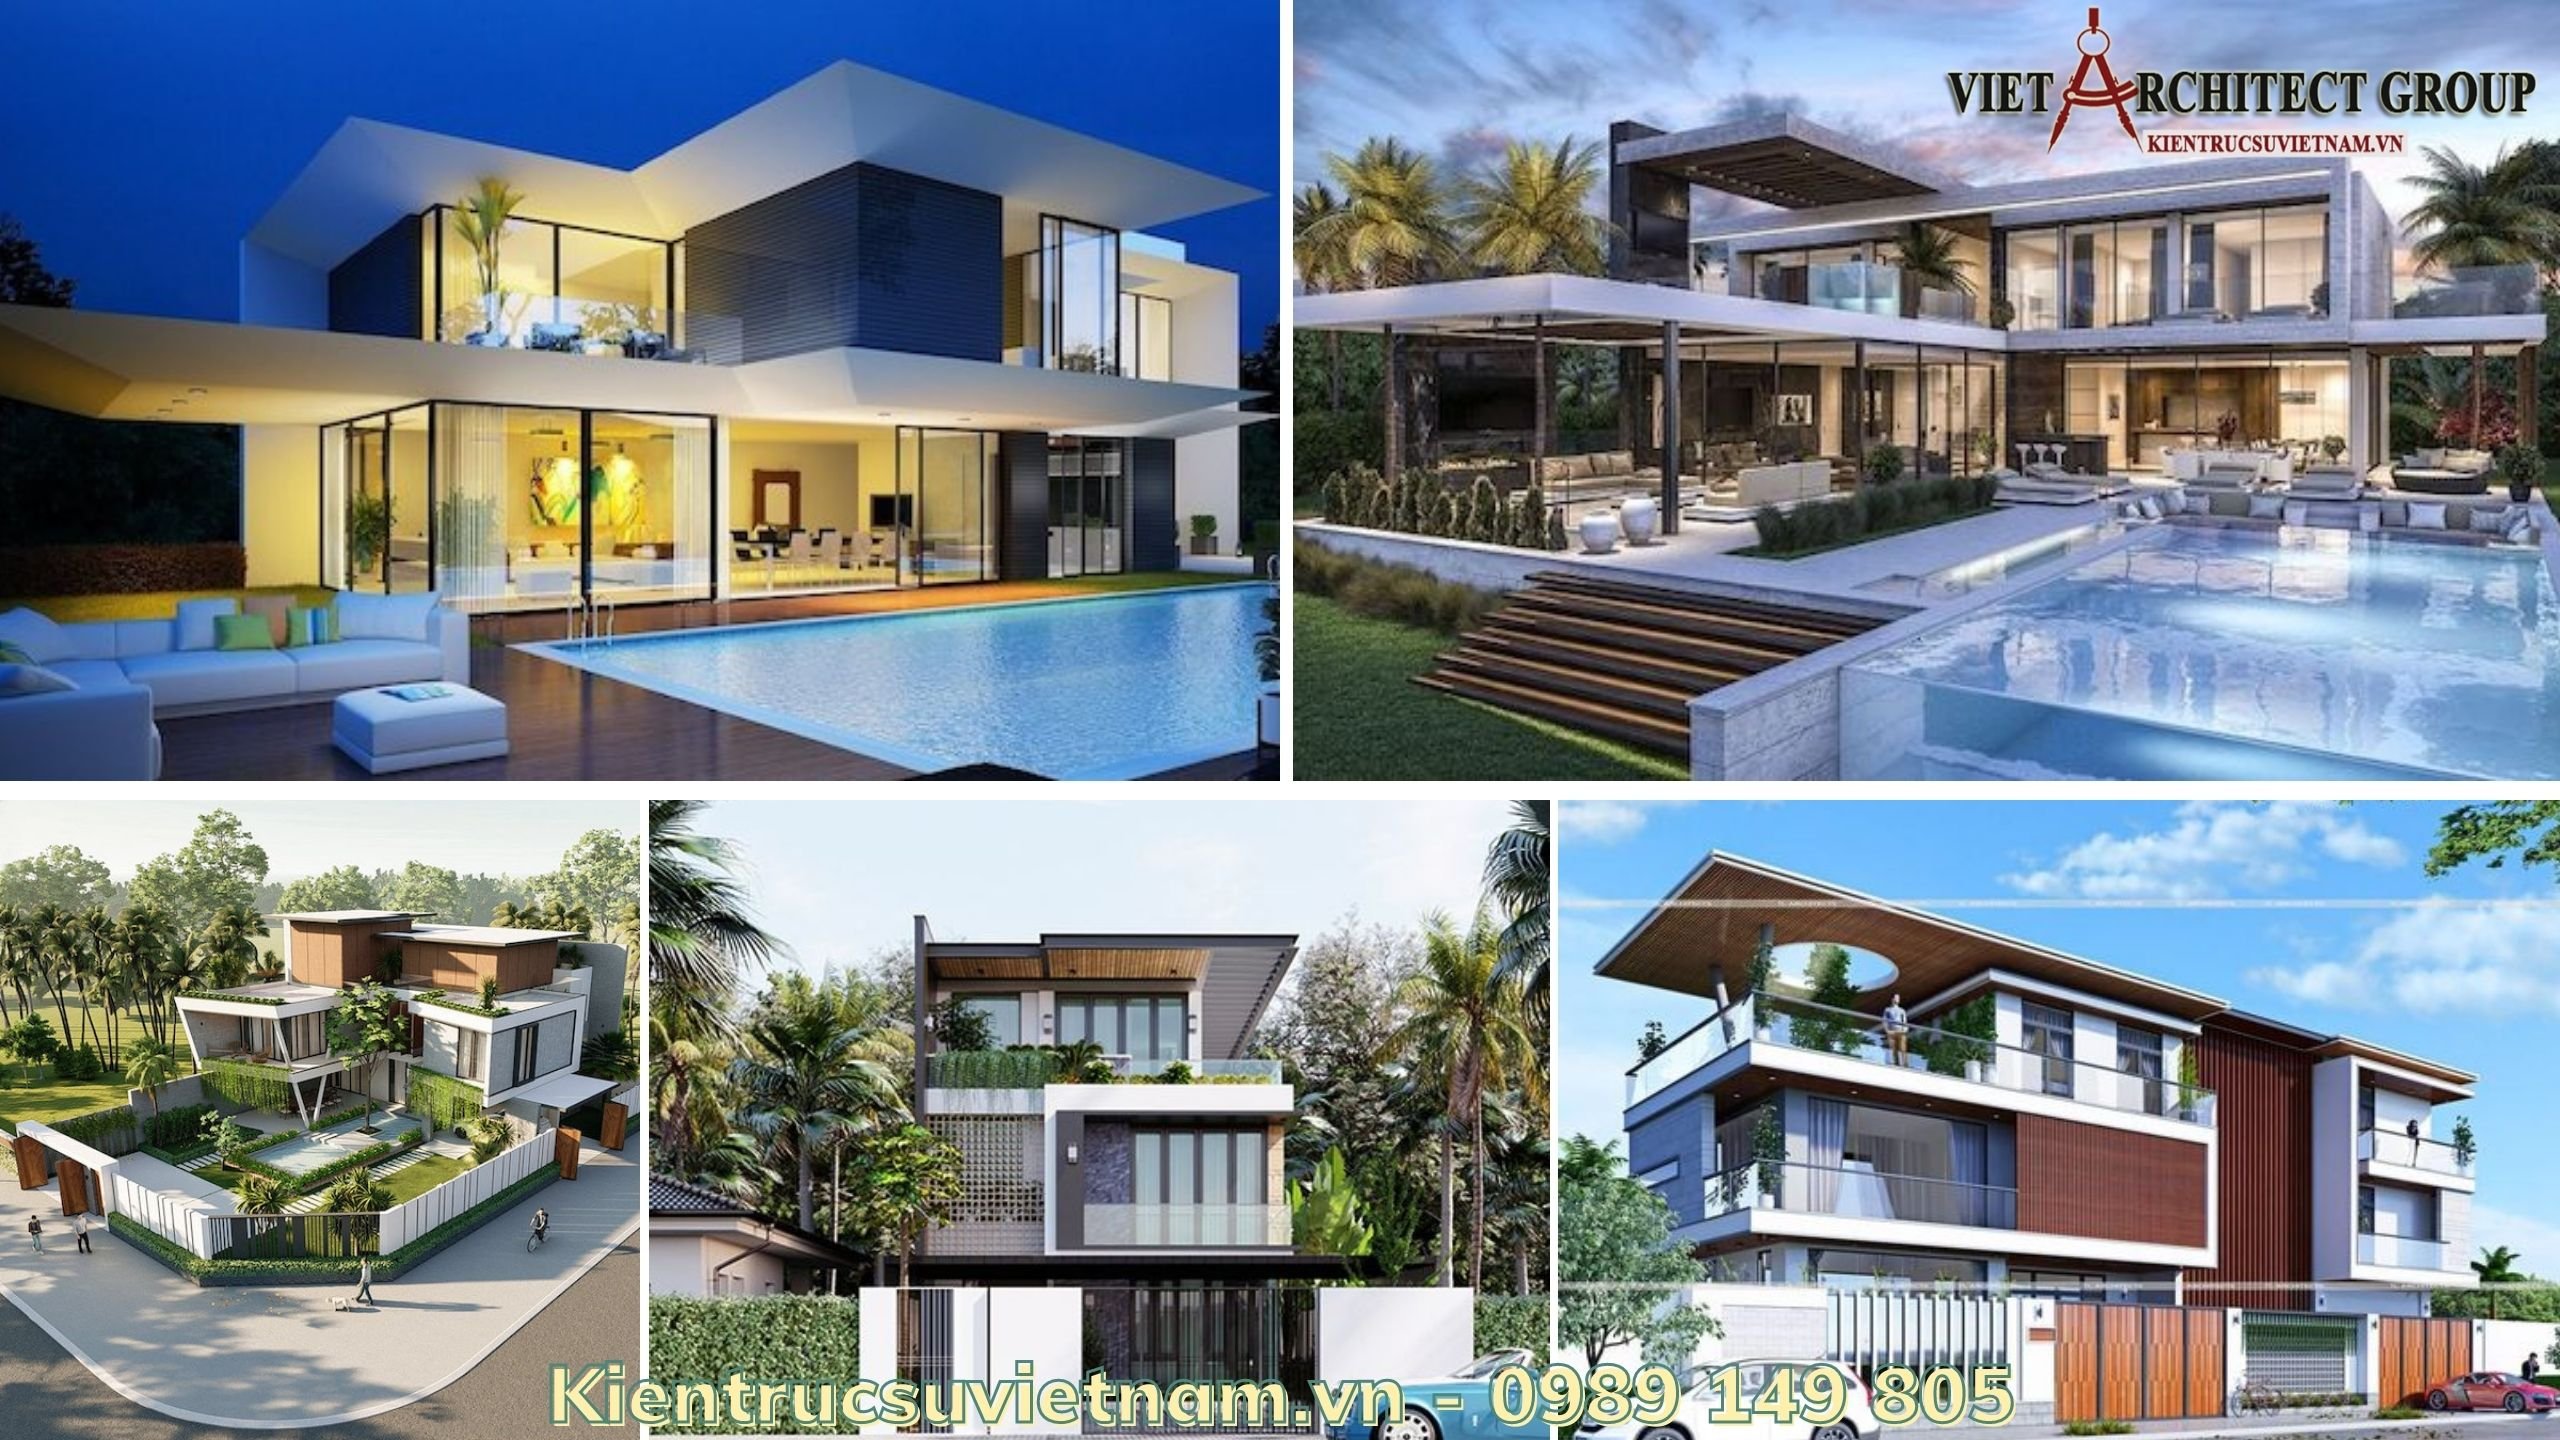 Việt Architect Group – Công ty thiết kế kiến trúc và khoan cắt bê tông hàng đầu Việt Nam